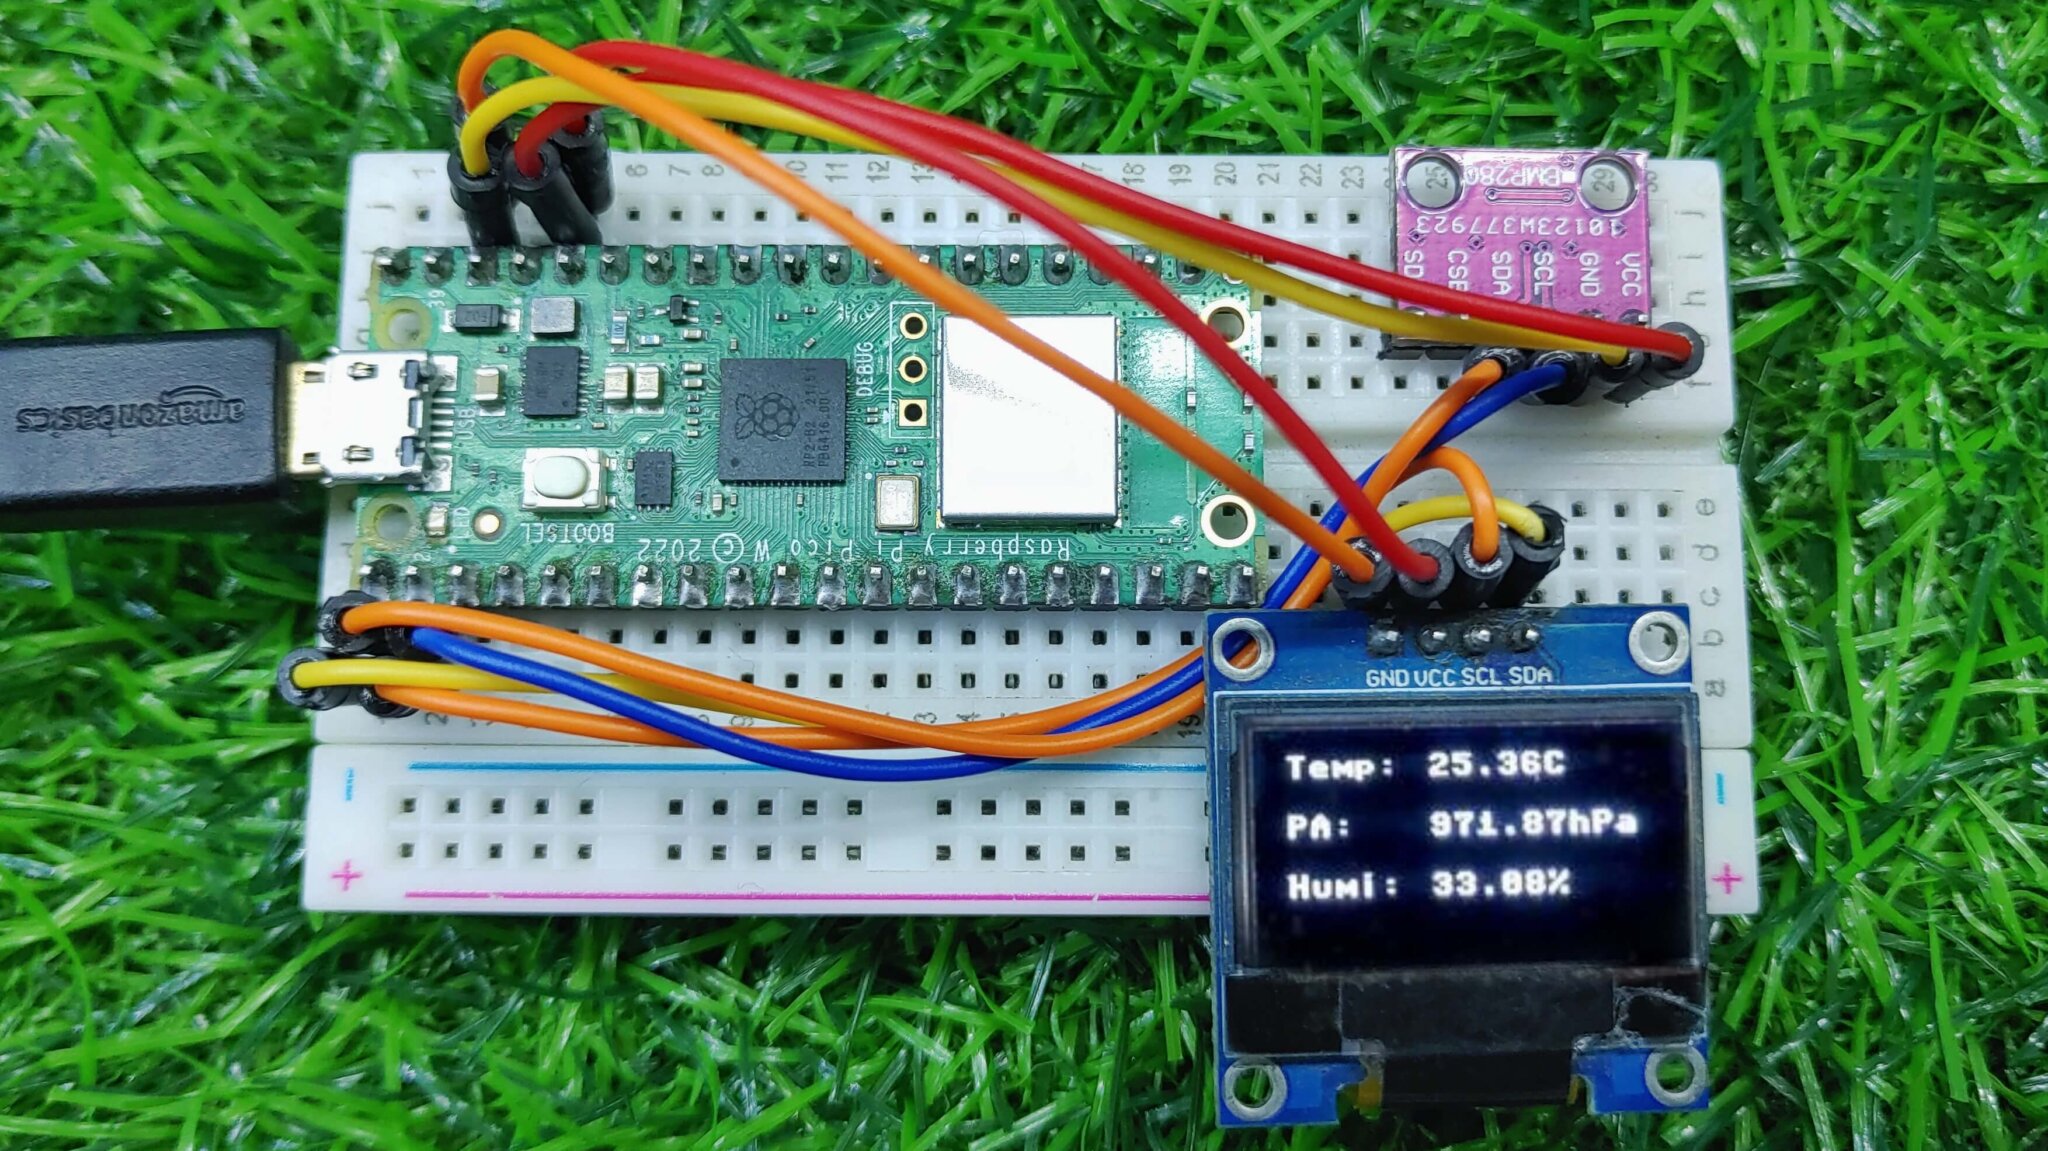 Bme280 Sensor With Raspberry Pi Pico W Using Micropython Code 9450